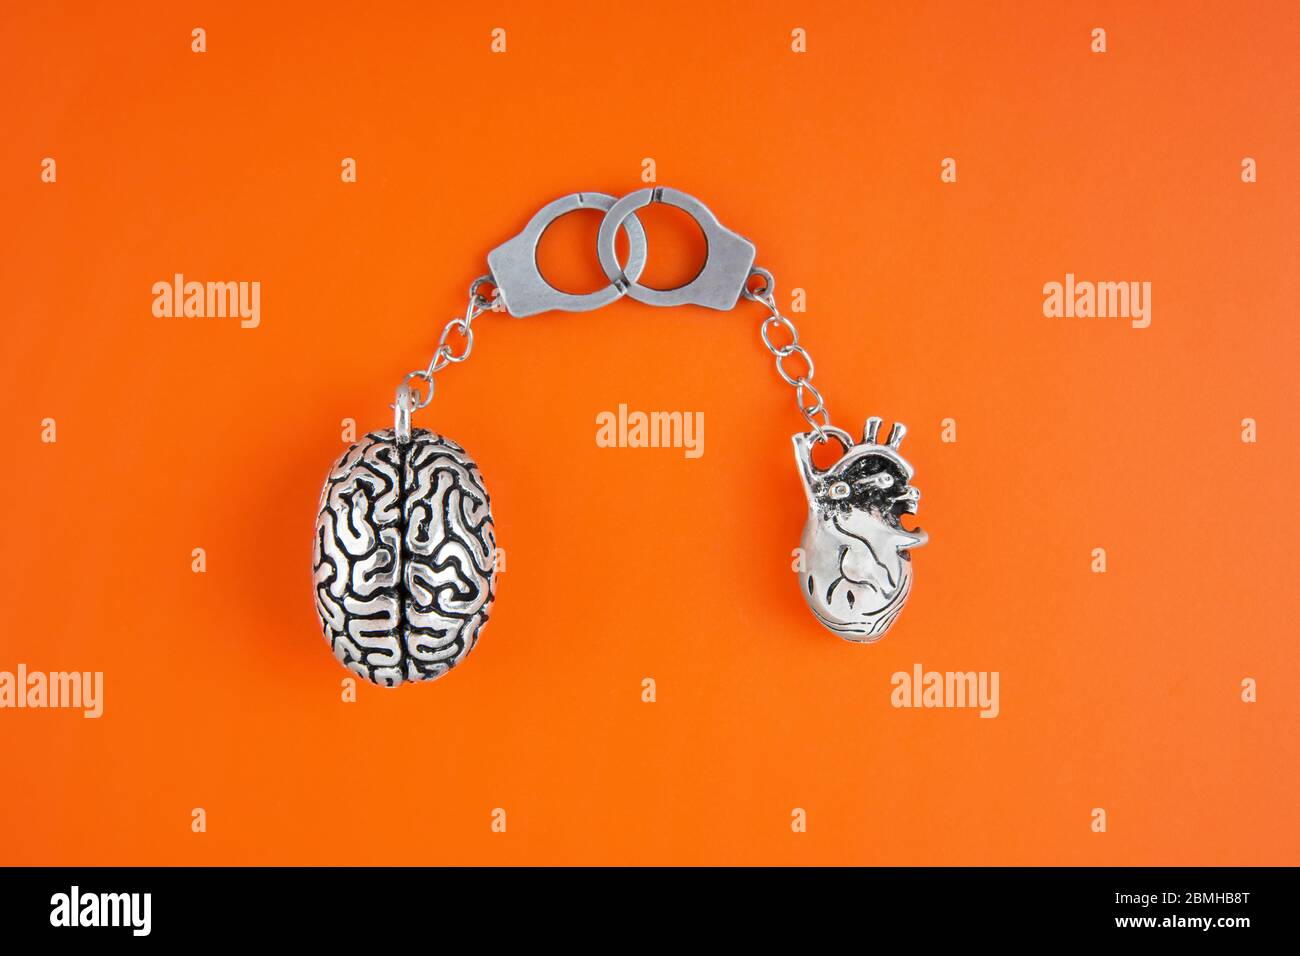 Disposizione piatta di copie anatomiche miniaturizzate del cervello e del cuore umano collegate a manette isolate su sfondo arancione. Sentimenti e connessione mentale Foto Stock